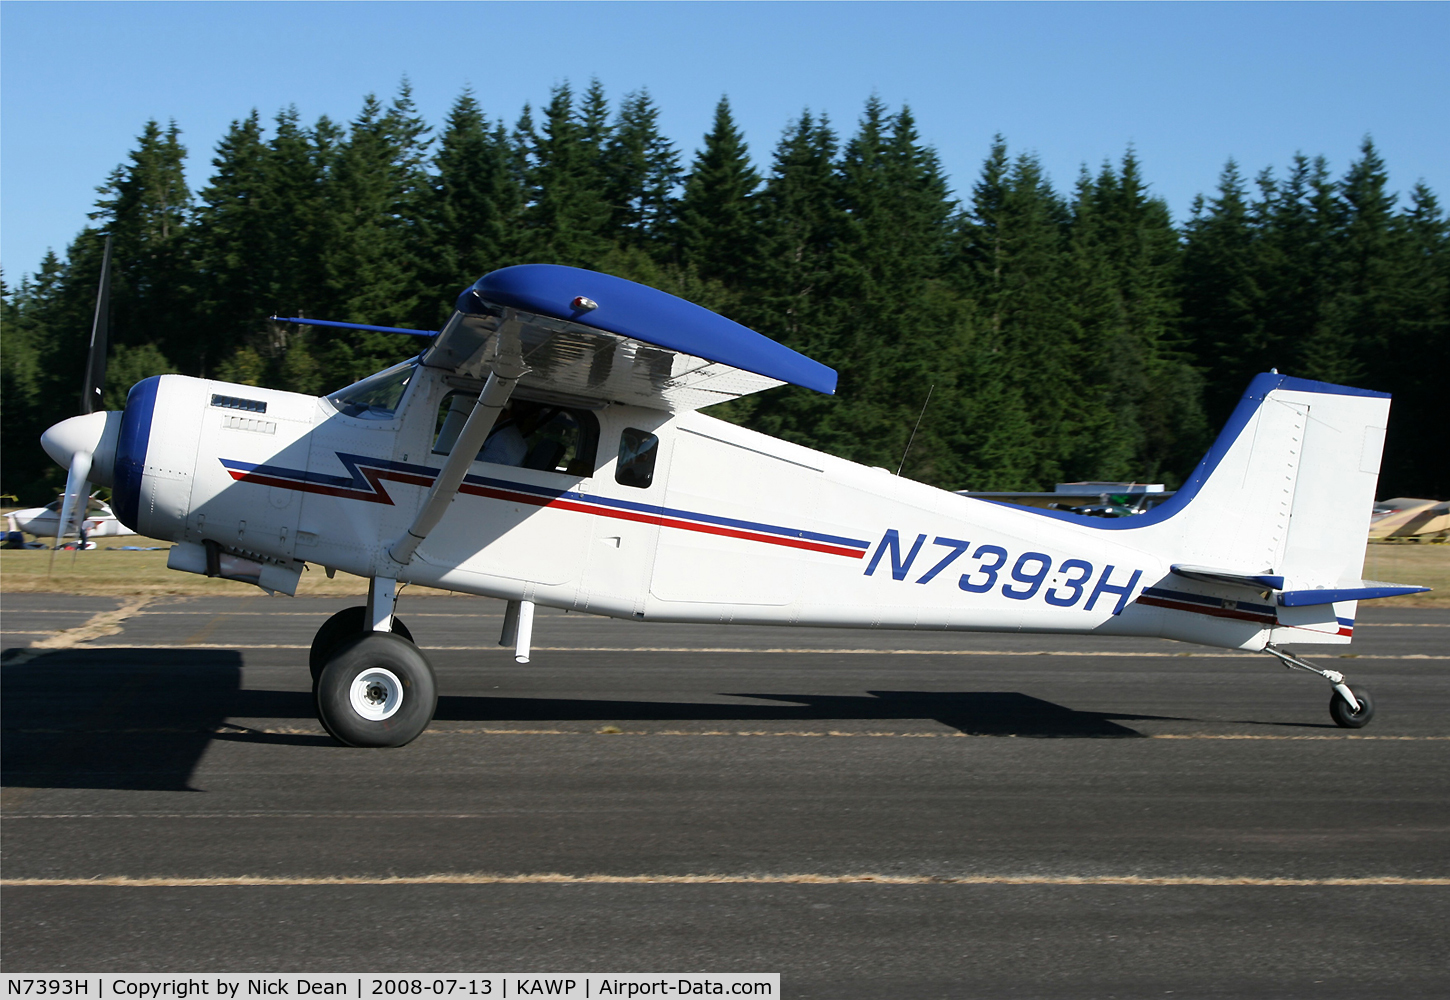 N7393H, 2002 Murphy SR3500 Moose C/N 047SR, Arlington fly in